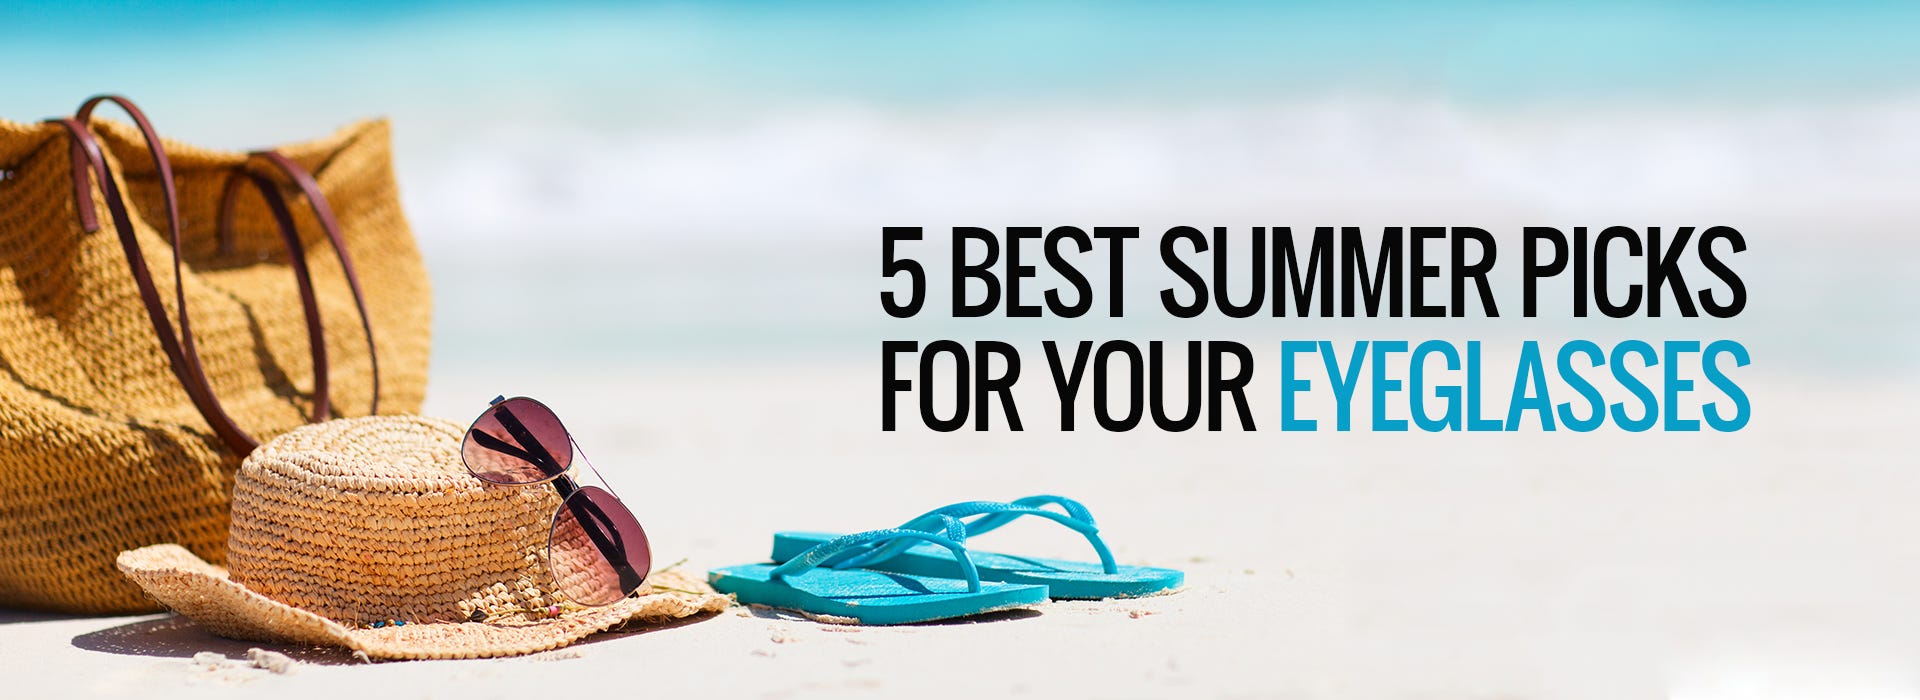 5 Best Summer Picks For Your Eyeglasses